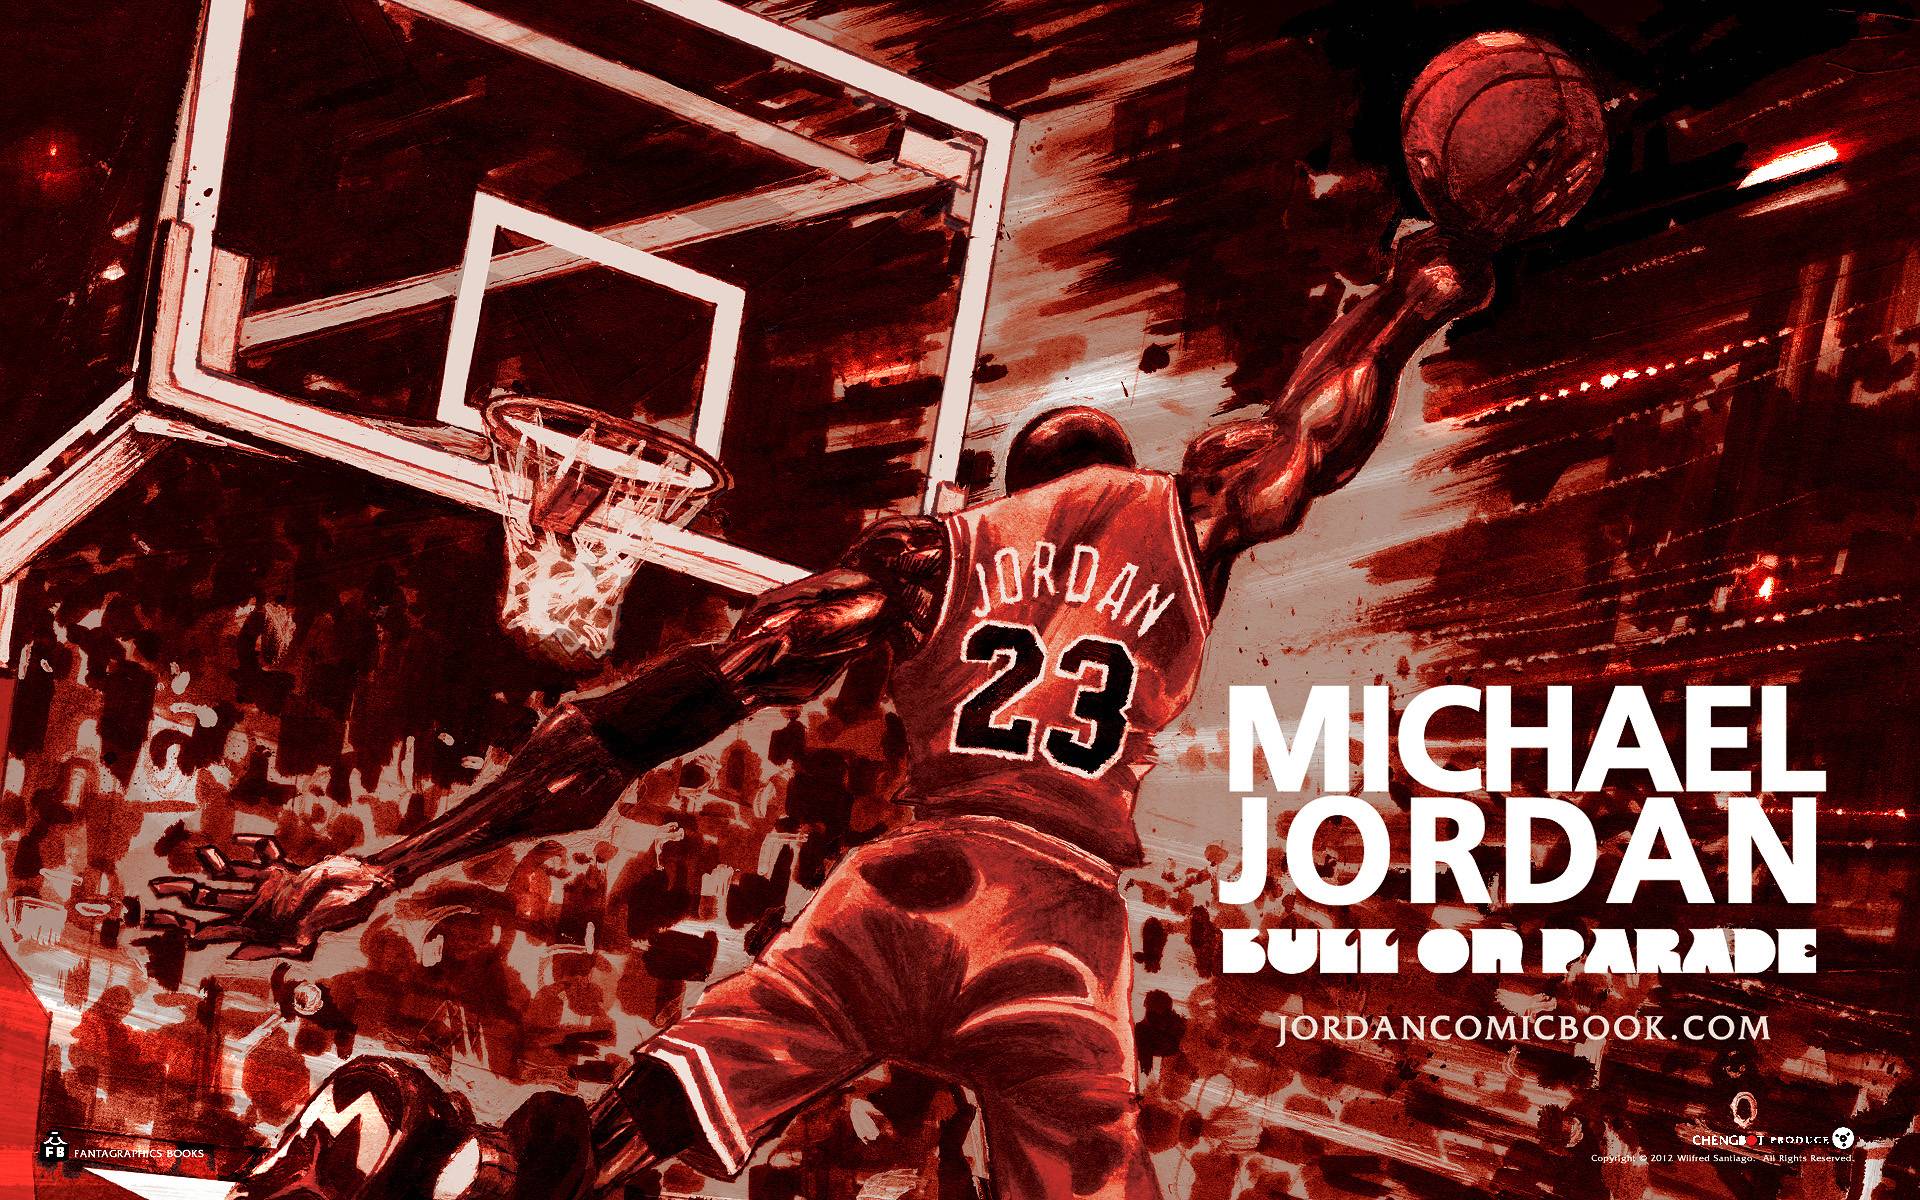 Michael Jordan Wallpaper 1 - Best Wallpaper Collection